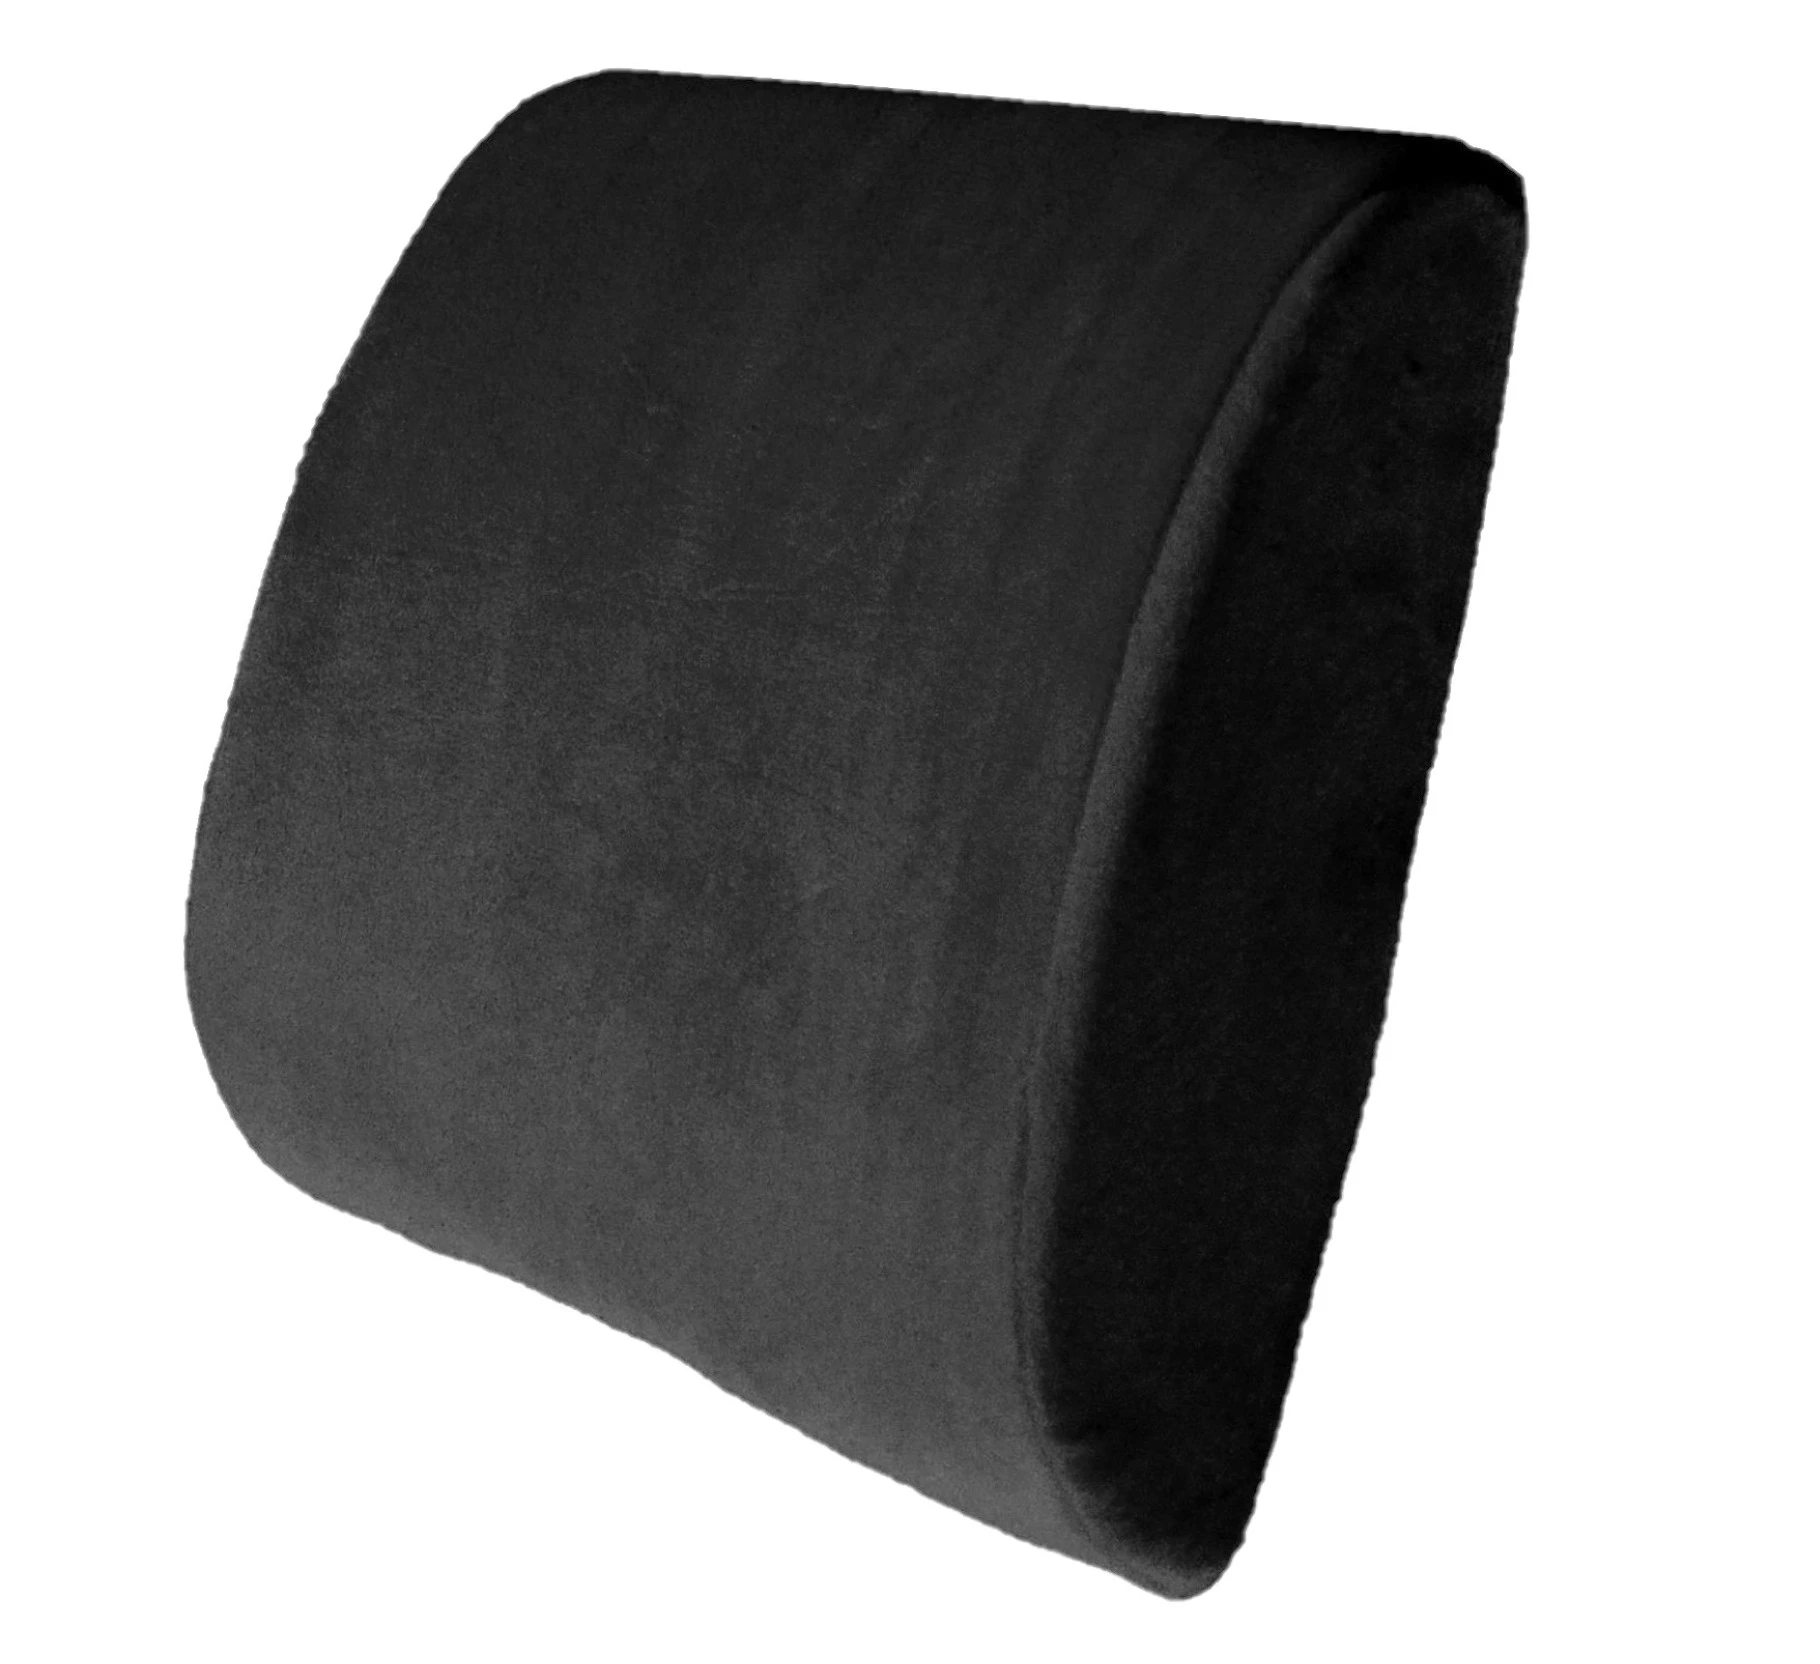 Luniform Lumbar Support Cushion 7 12 H x 11 x 2 34 D Black